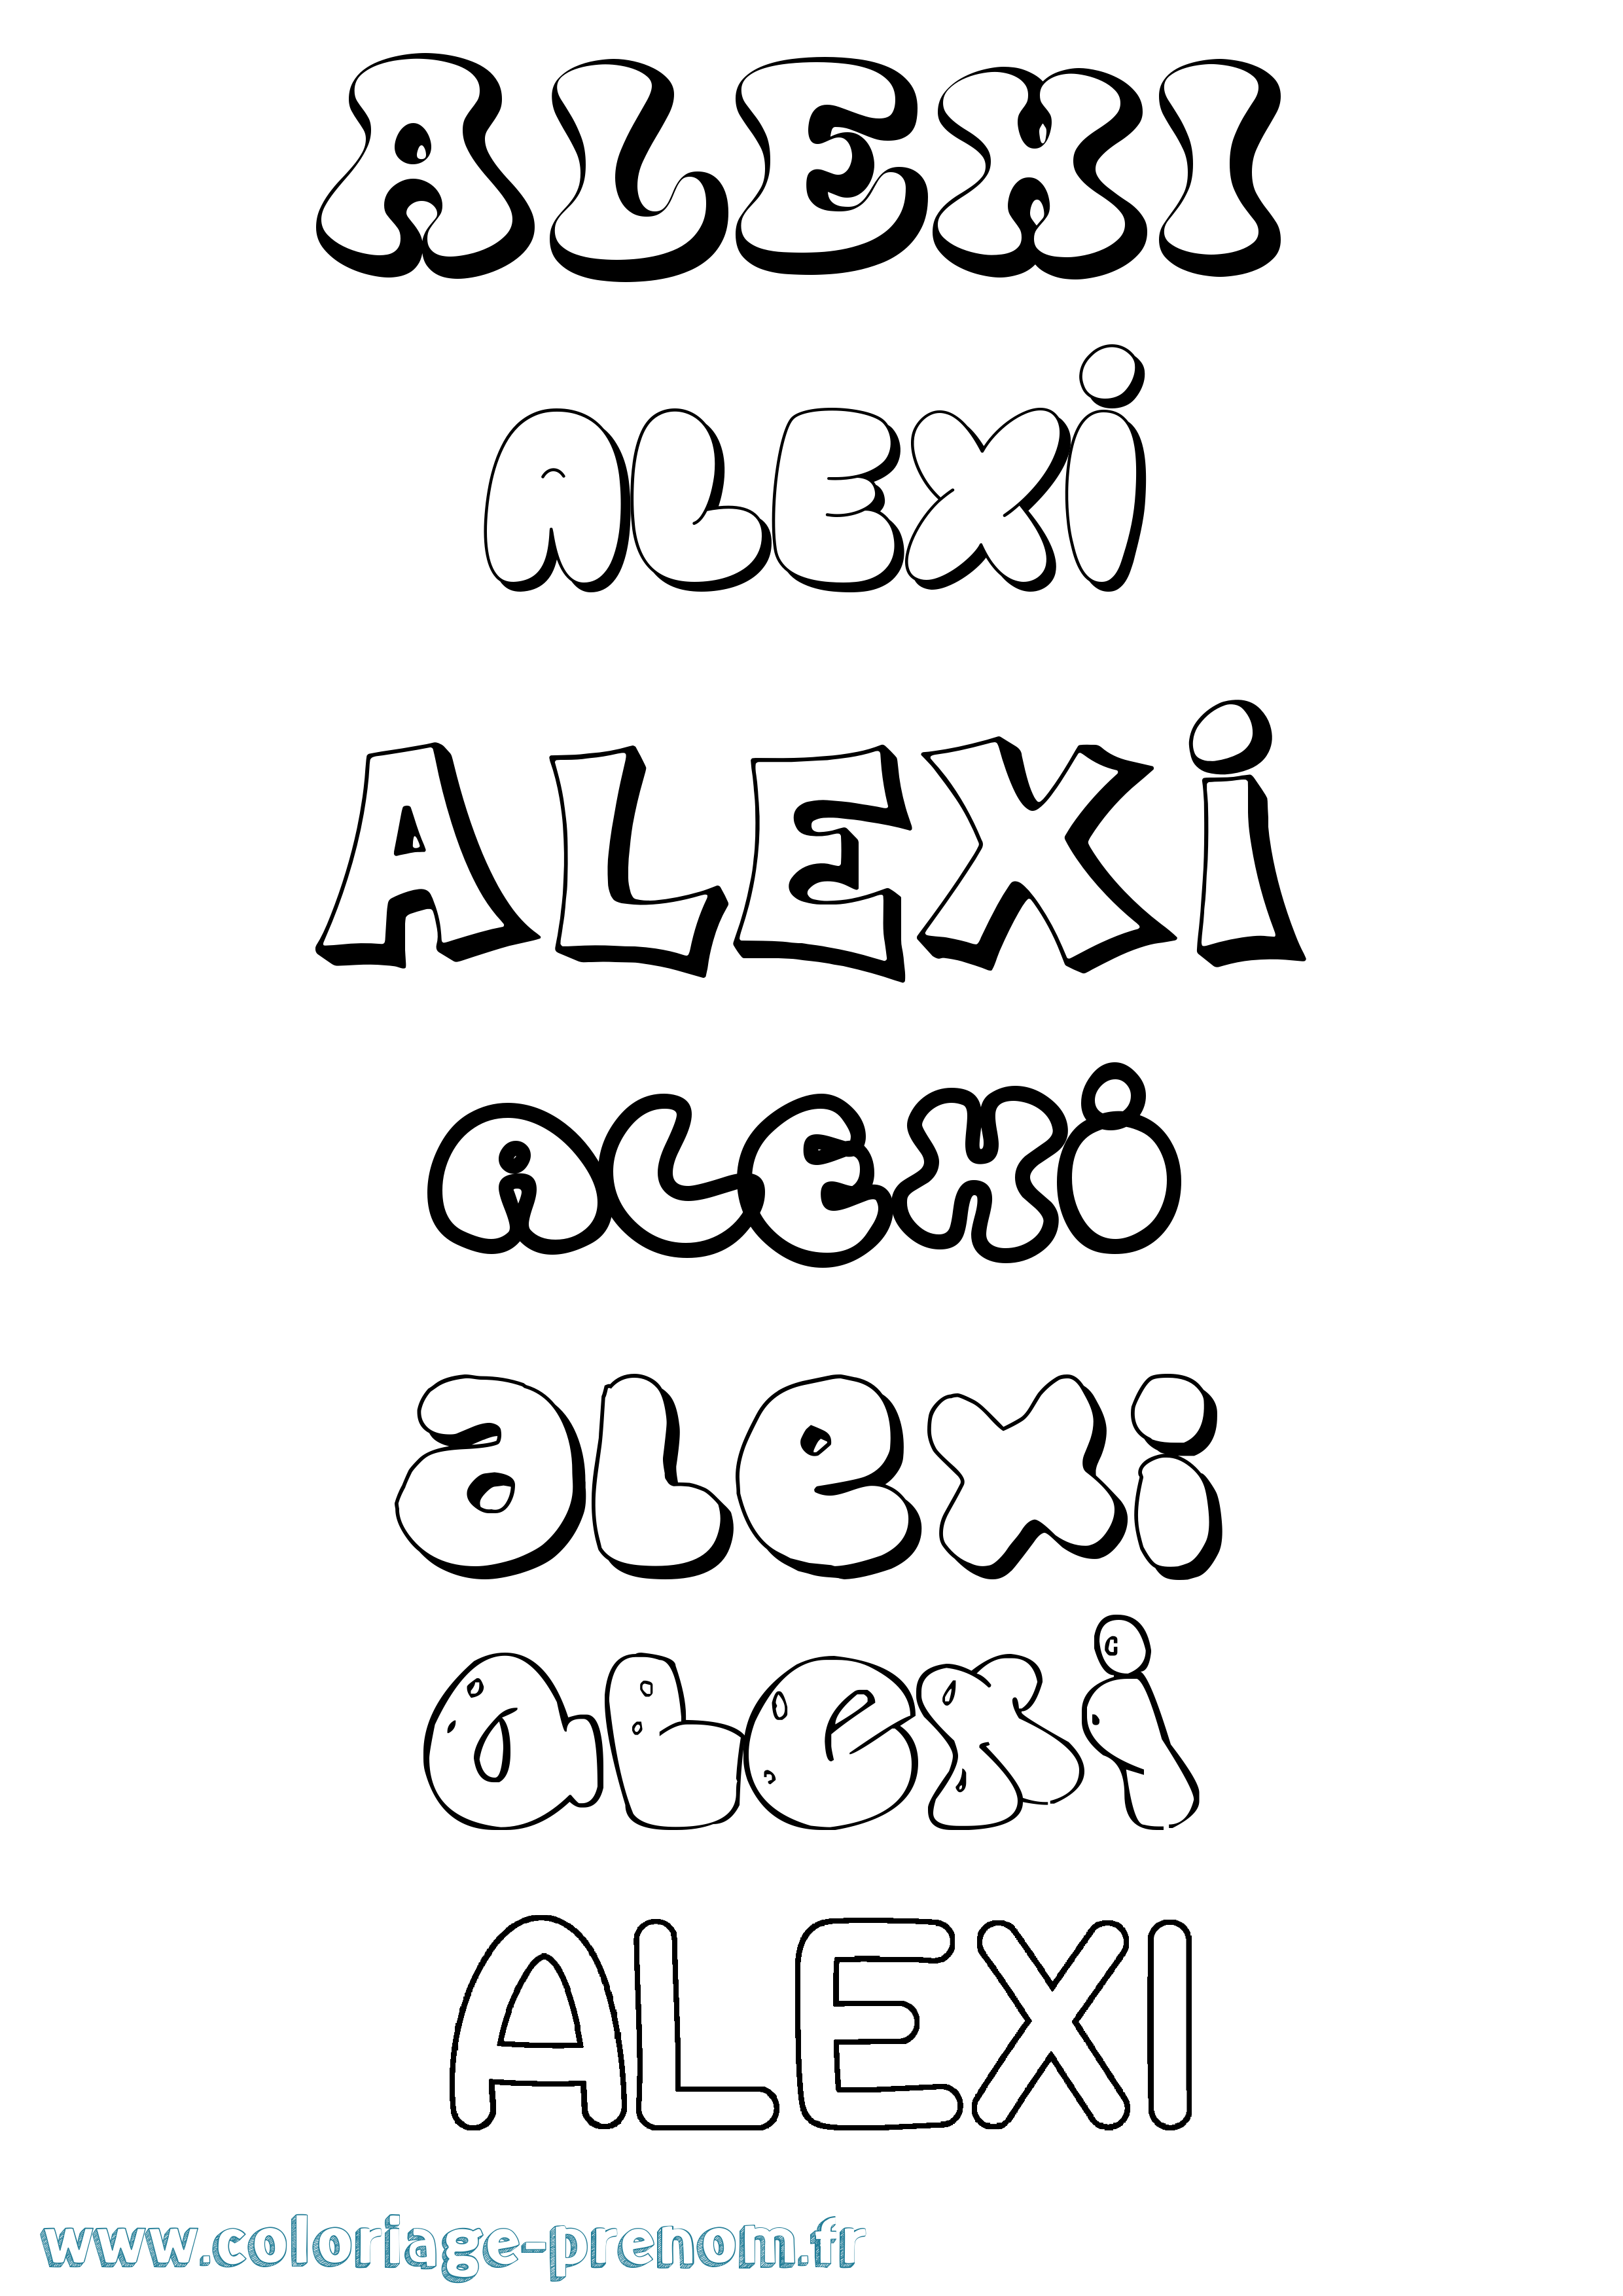 Coloriage prénom Alexi Bubble